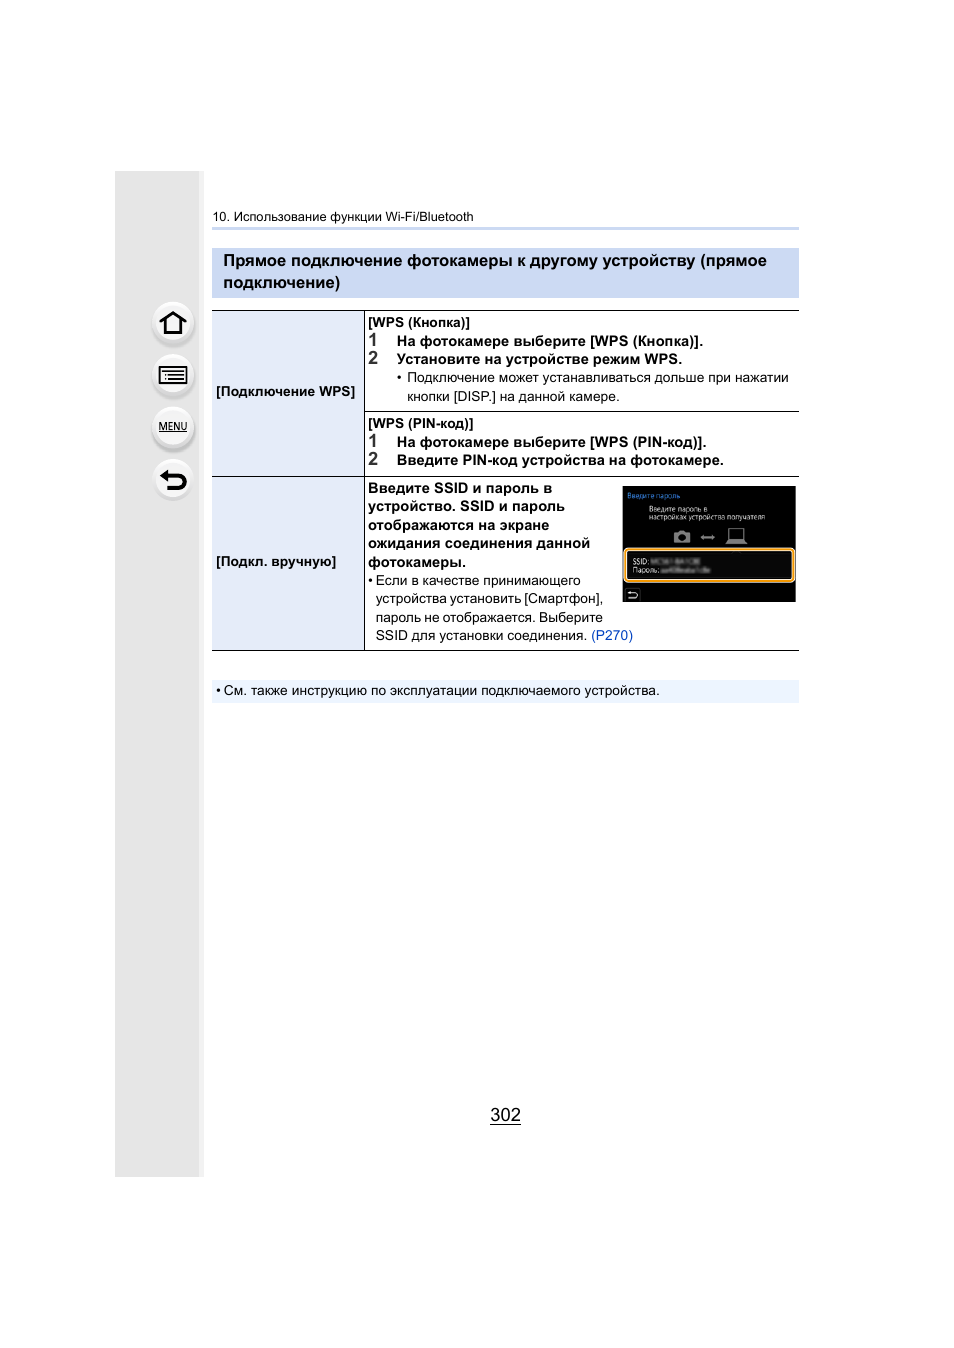 Подключение), P302 | Инструкция по эксплуатации Panasonic Lumix GH5 | Страница 302 / 347